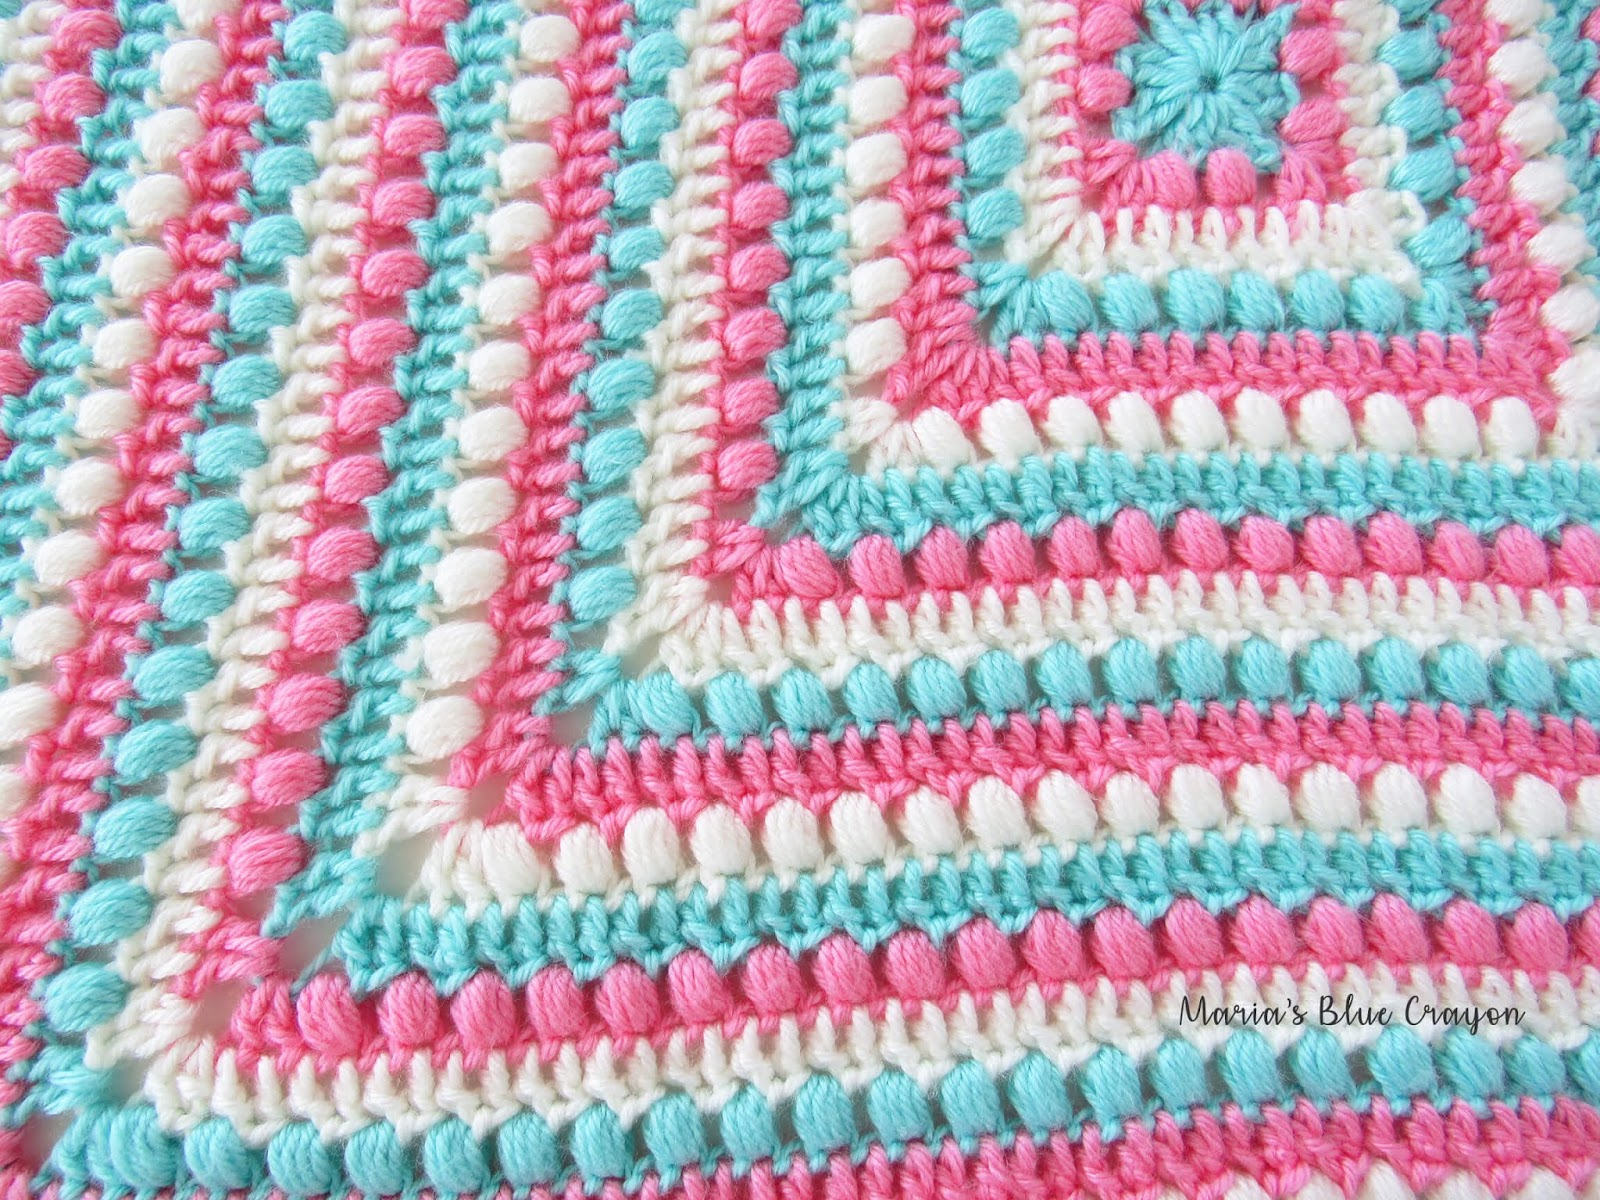 Crochet Granny Square Pattern Bobbles And Stripes Granny Square Blanket Free Easy Crochet Pattern